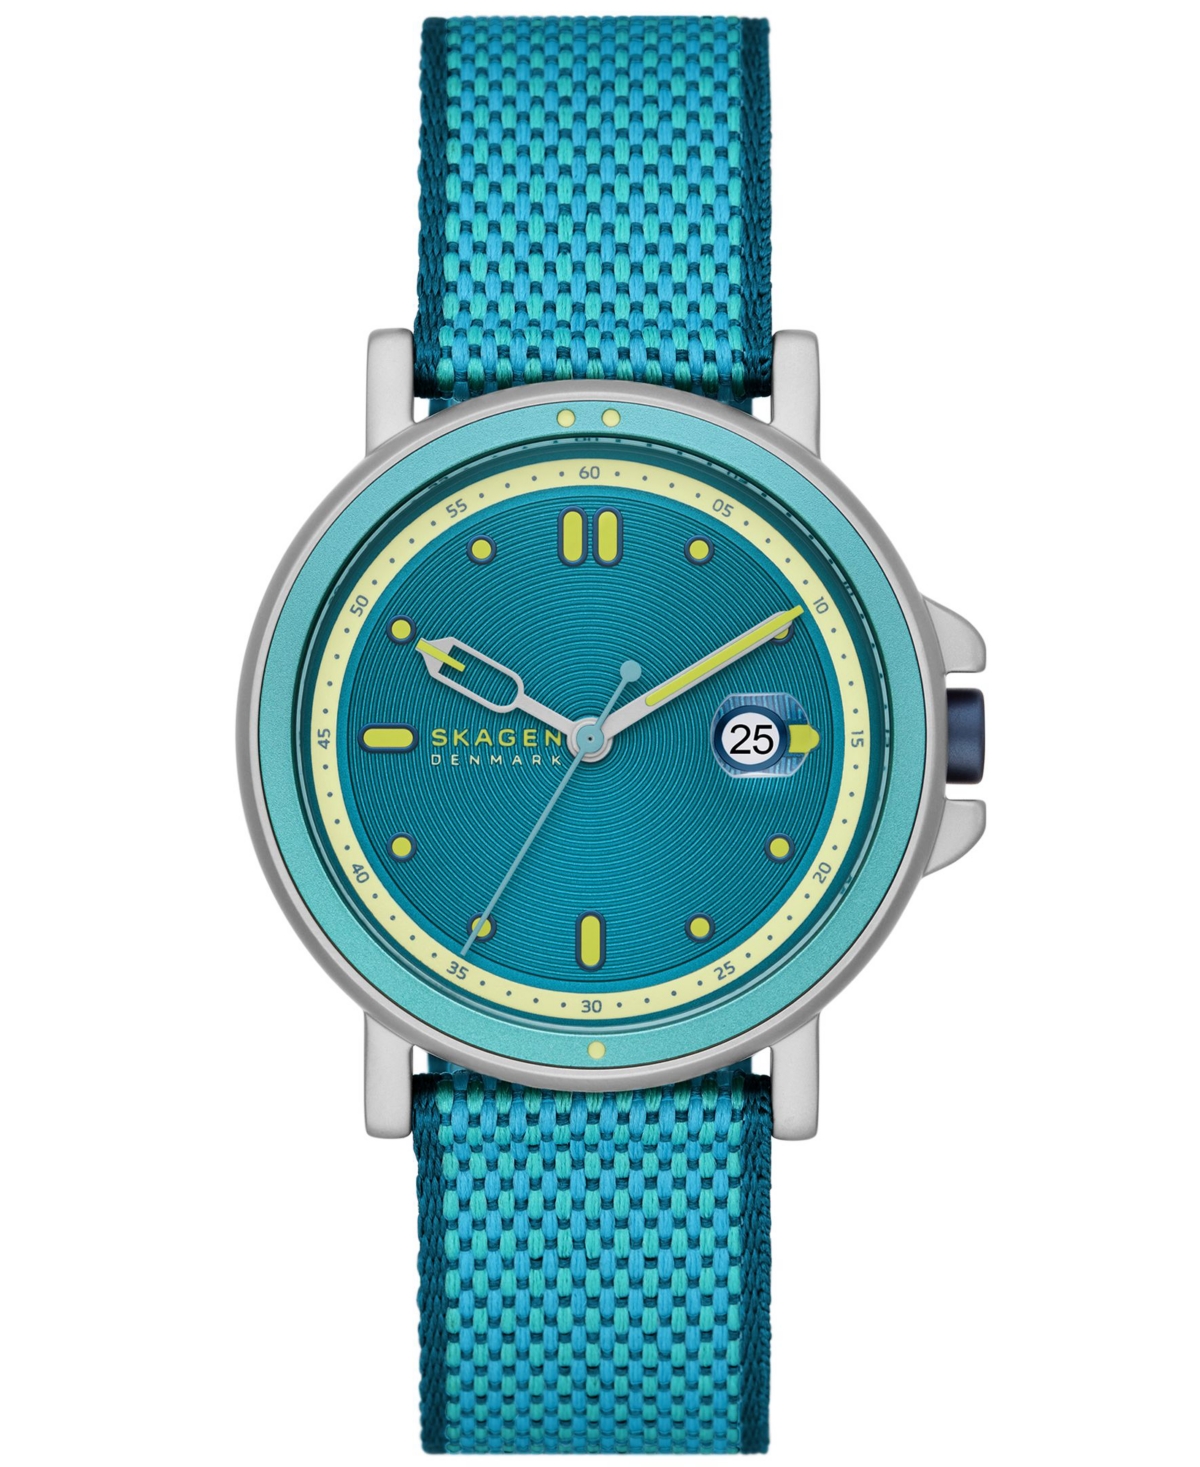 Men's Signatur Sport Le Three Hand Date Blue Pro-Planet Plastic Watch 40mm - Blue